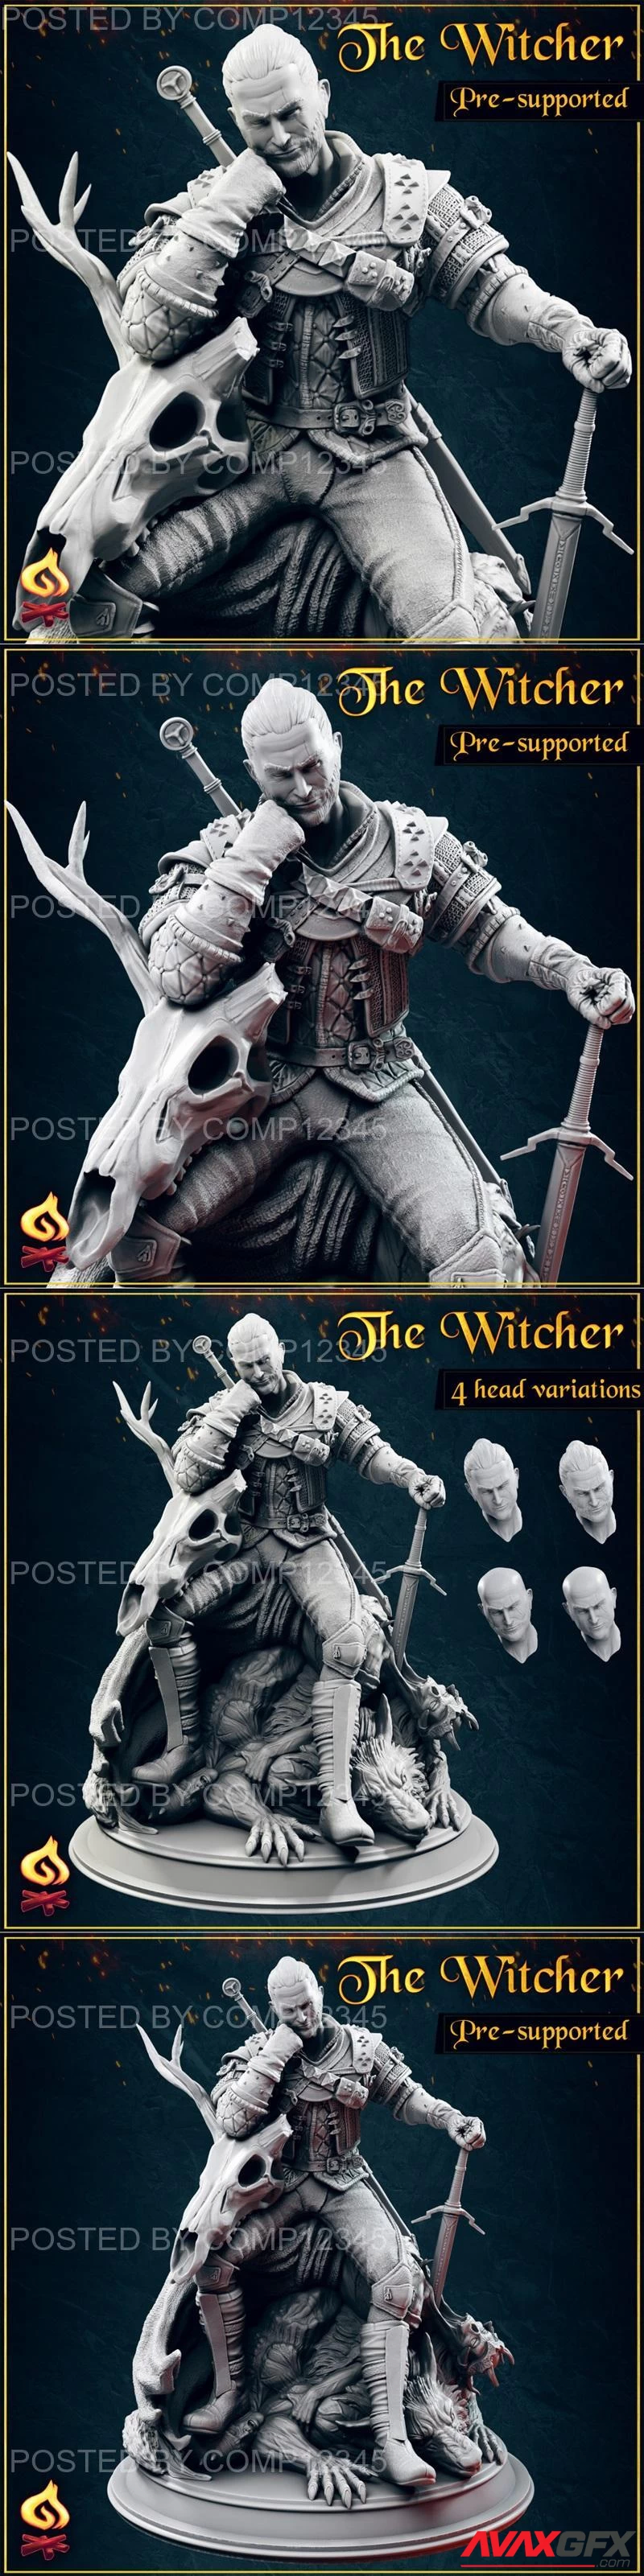 Geralt The Witcher - Fanart